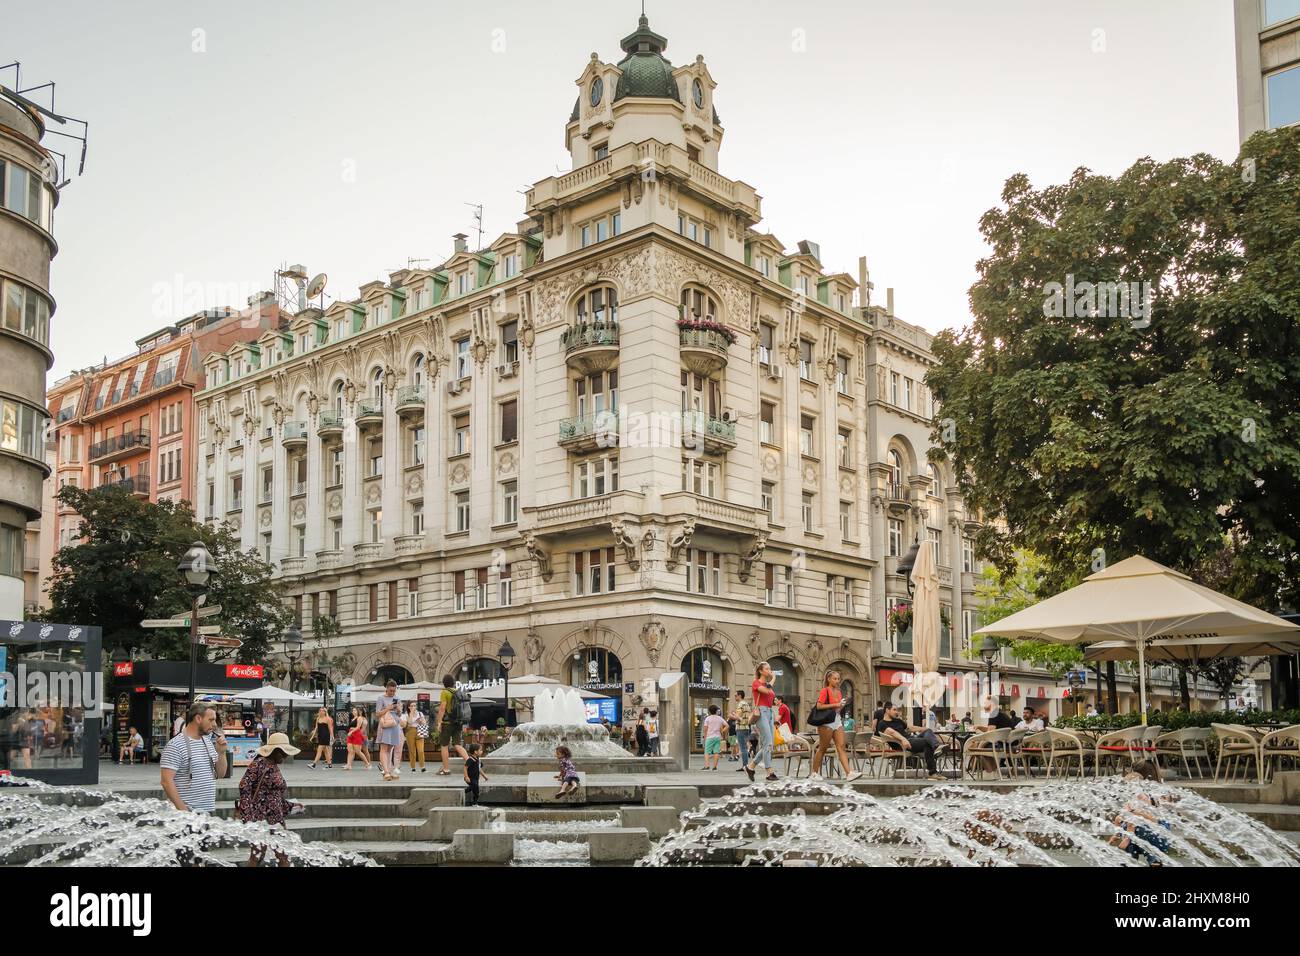 Belgrade cityscape in summer. Serbian capital city central square street scene Stock Photo